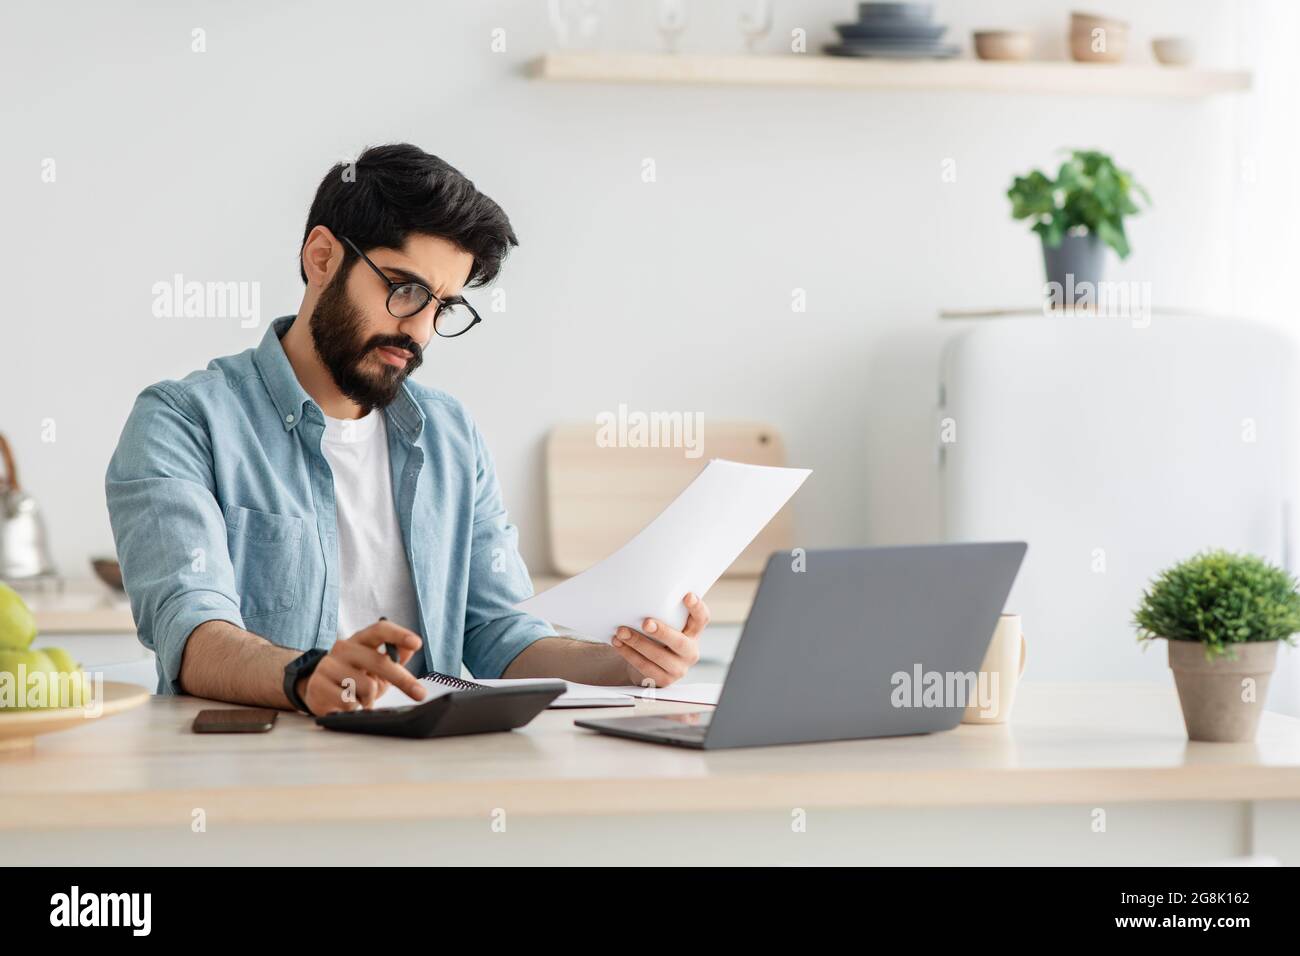 Payer des factures, des taxes à la maison en ligne. Jeune homme arabe utilisant une calculatrice et un ordinateur portable, assis à la cuisine, espace de copie Banque D'Images